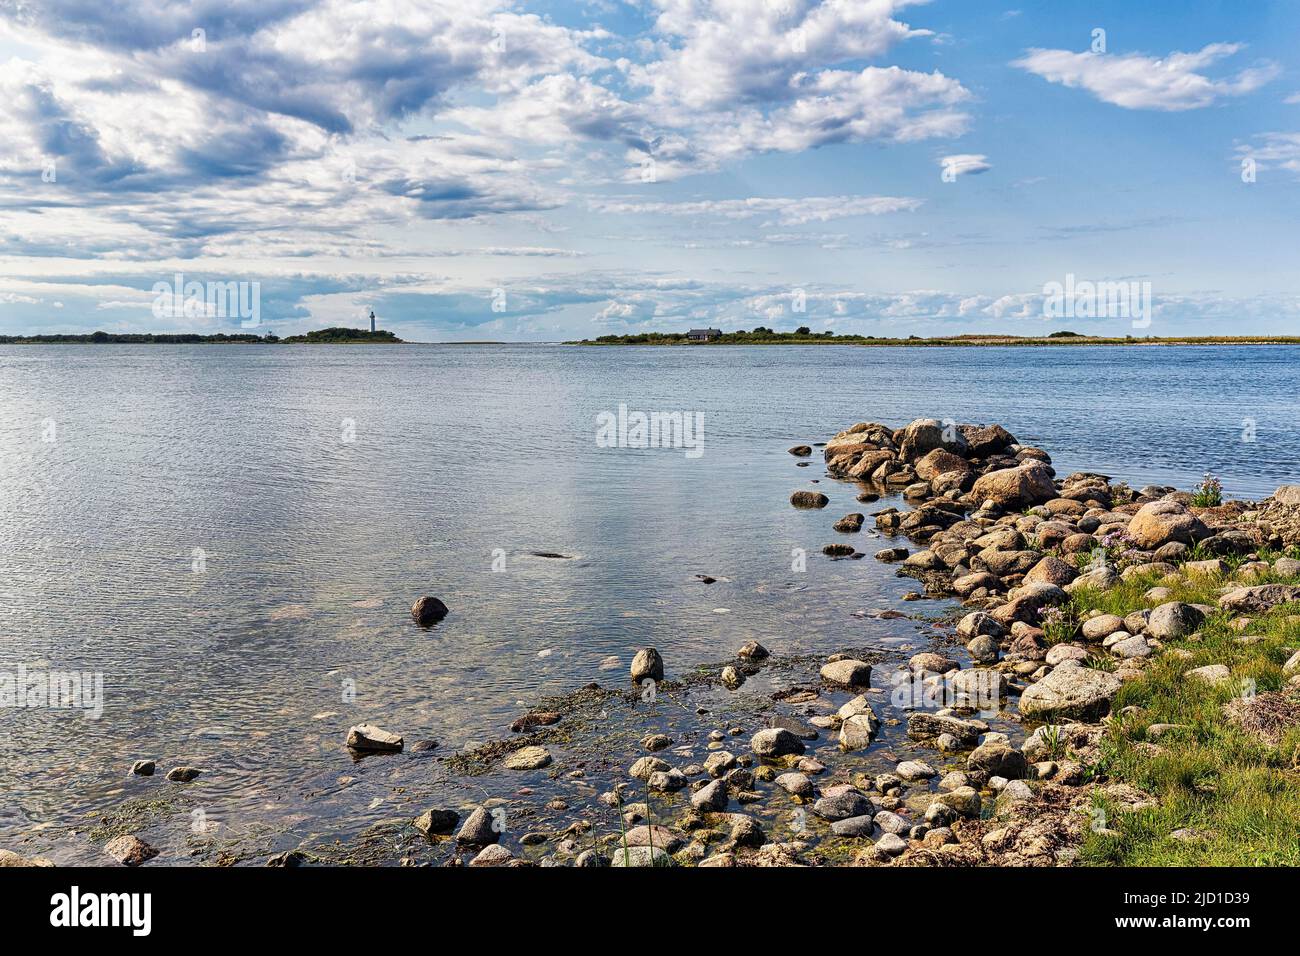 Blick auf die lagunenartige Bucht Grankullaviken mit Leuchtturm lange Erik am Horizont, Nordspitze der Insel Oeland, Kalmar laen, Schweden Stockfoto